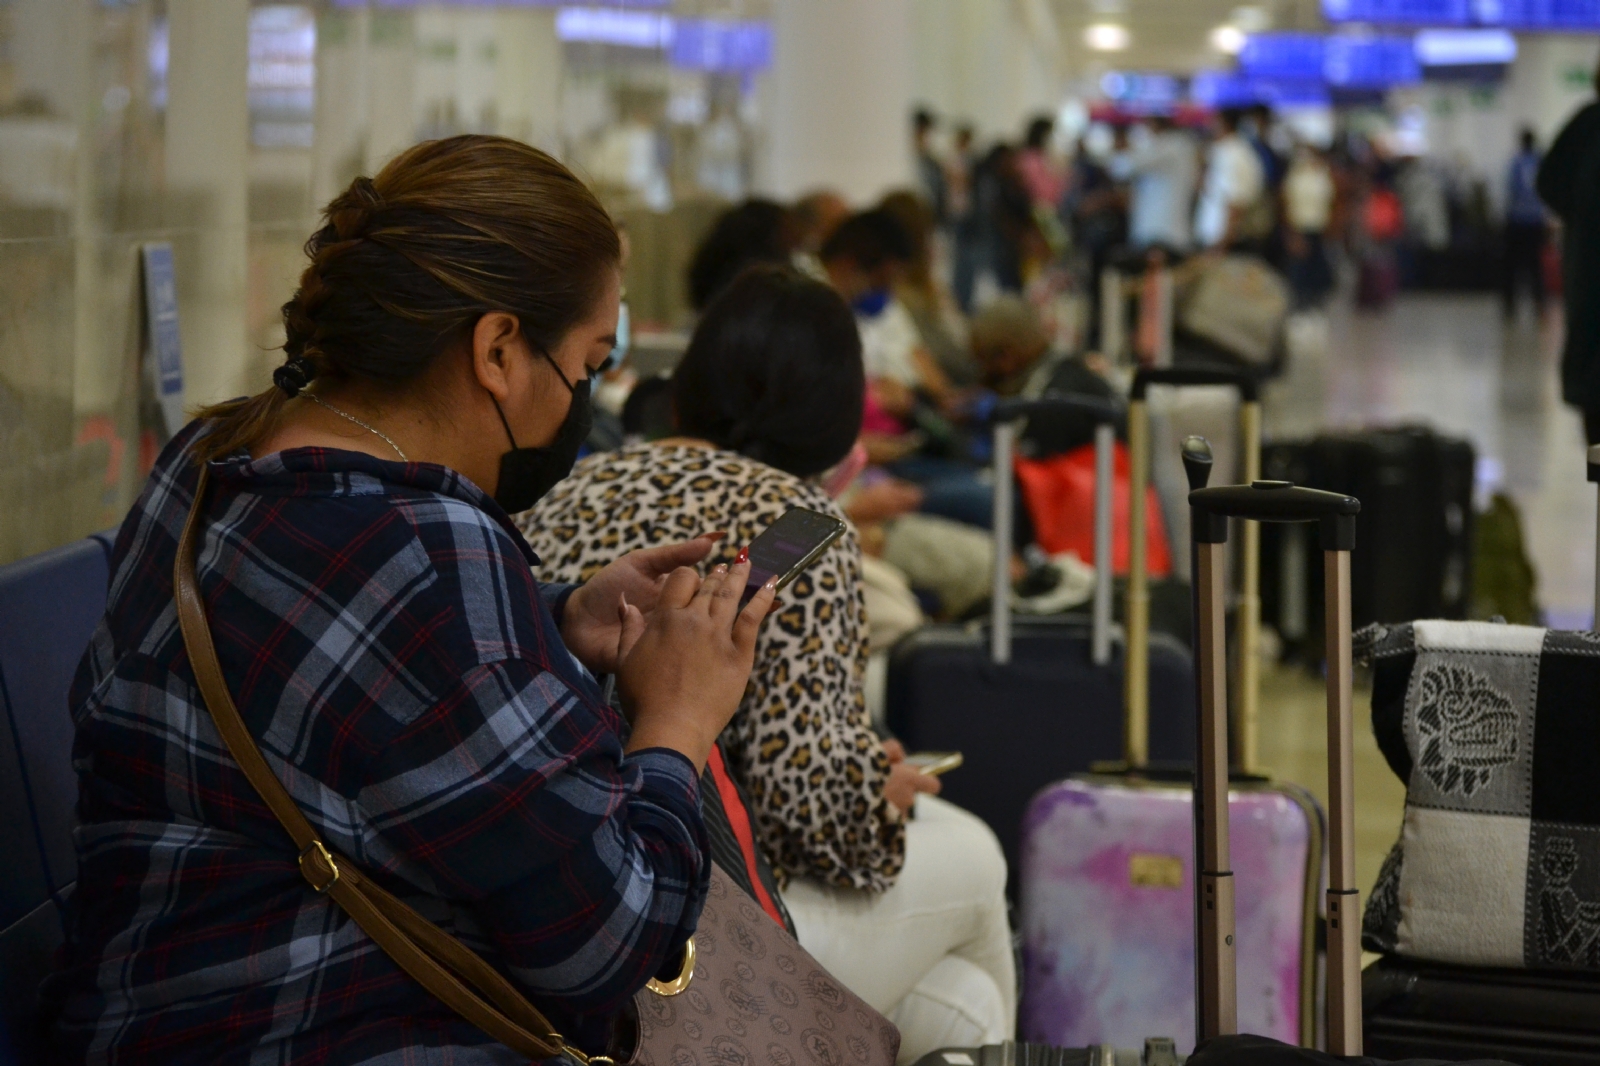 Aeropuerto de Cancún: Aerolínea impide abordaje de 4 pasajeros